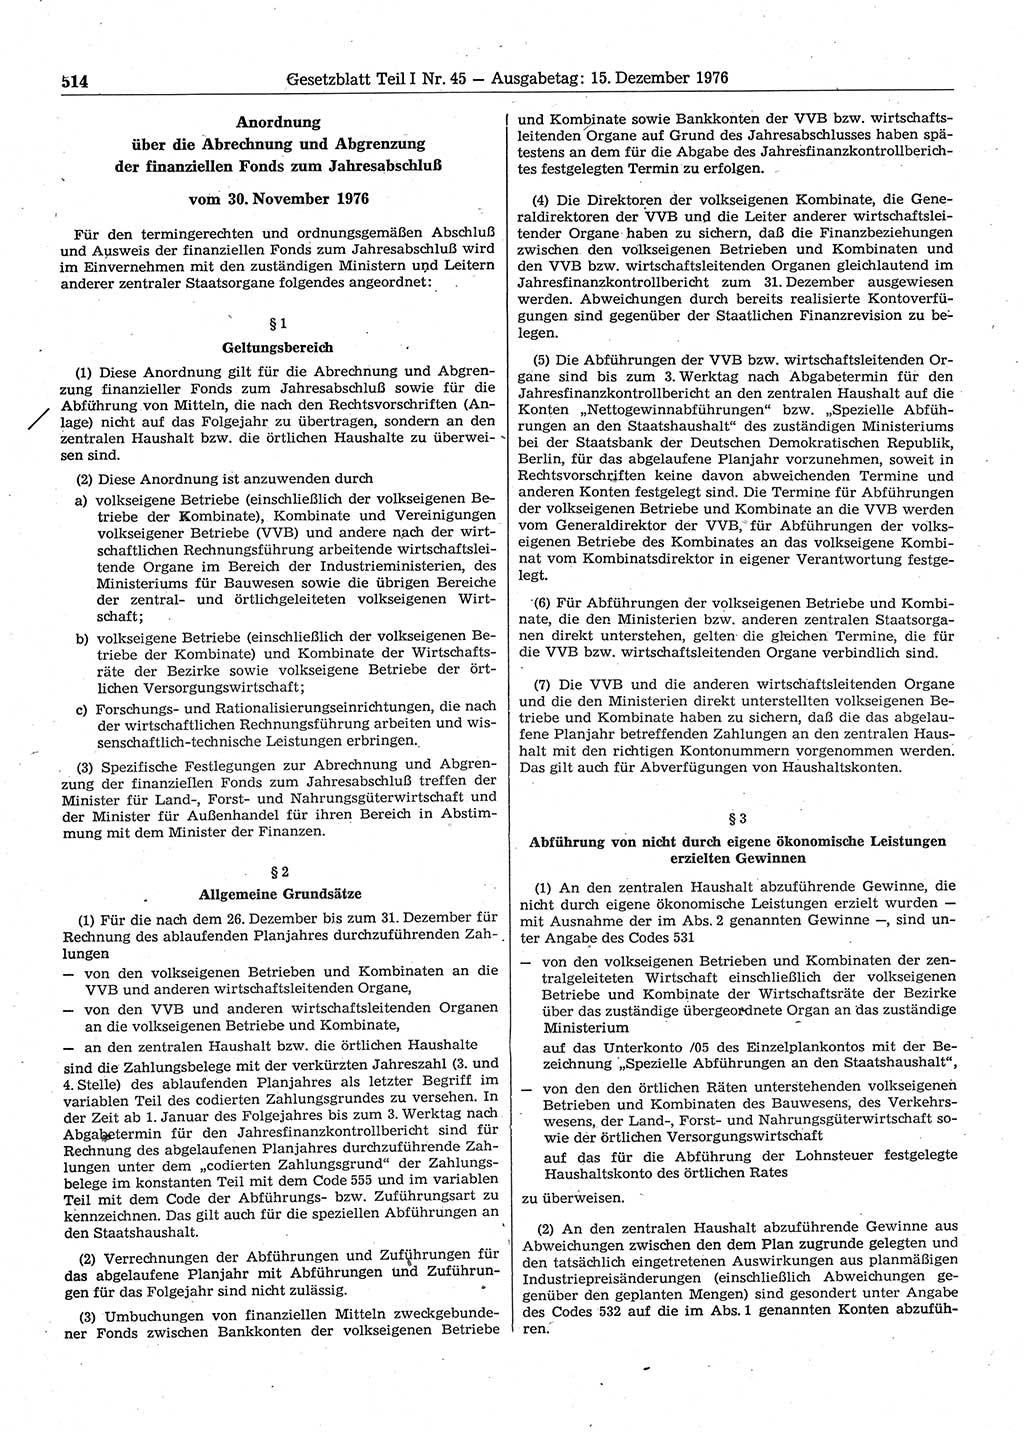 Gesetzblatt (GBl.) der Deutschen Demokratischen Republik (DDR) Teil Ⅰ 1976, Seite 514 (GBl. DDR Ⅰ 1976, S. 514)